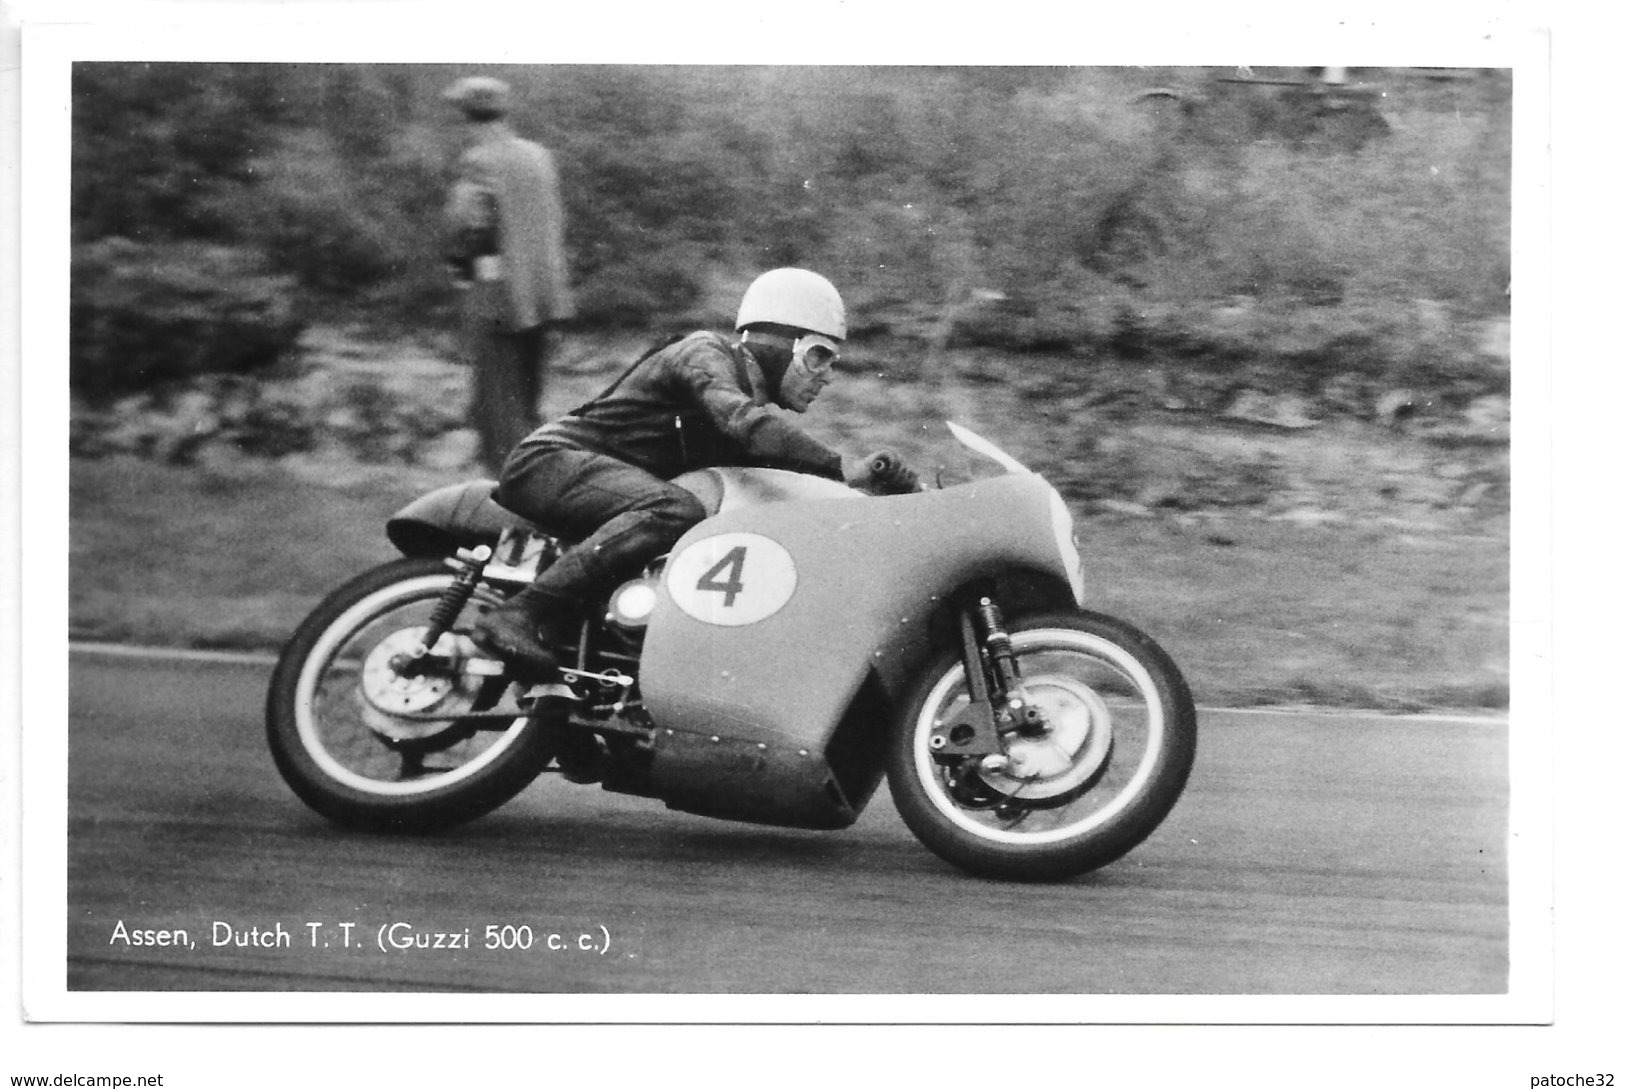 Carte-photo...Assen...(pays-bas)...moto...dutchT.T.....(guzzi C.c.)...années 50... - Sport Moto